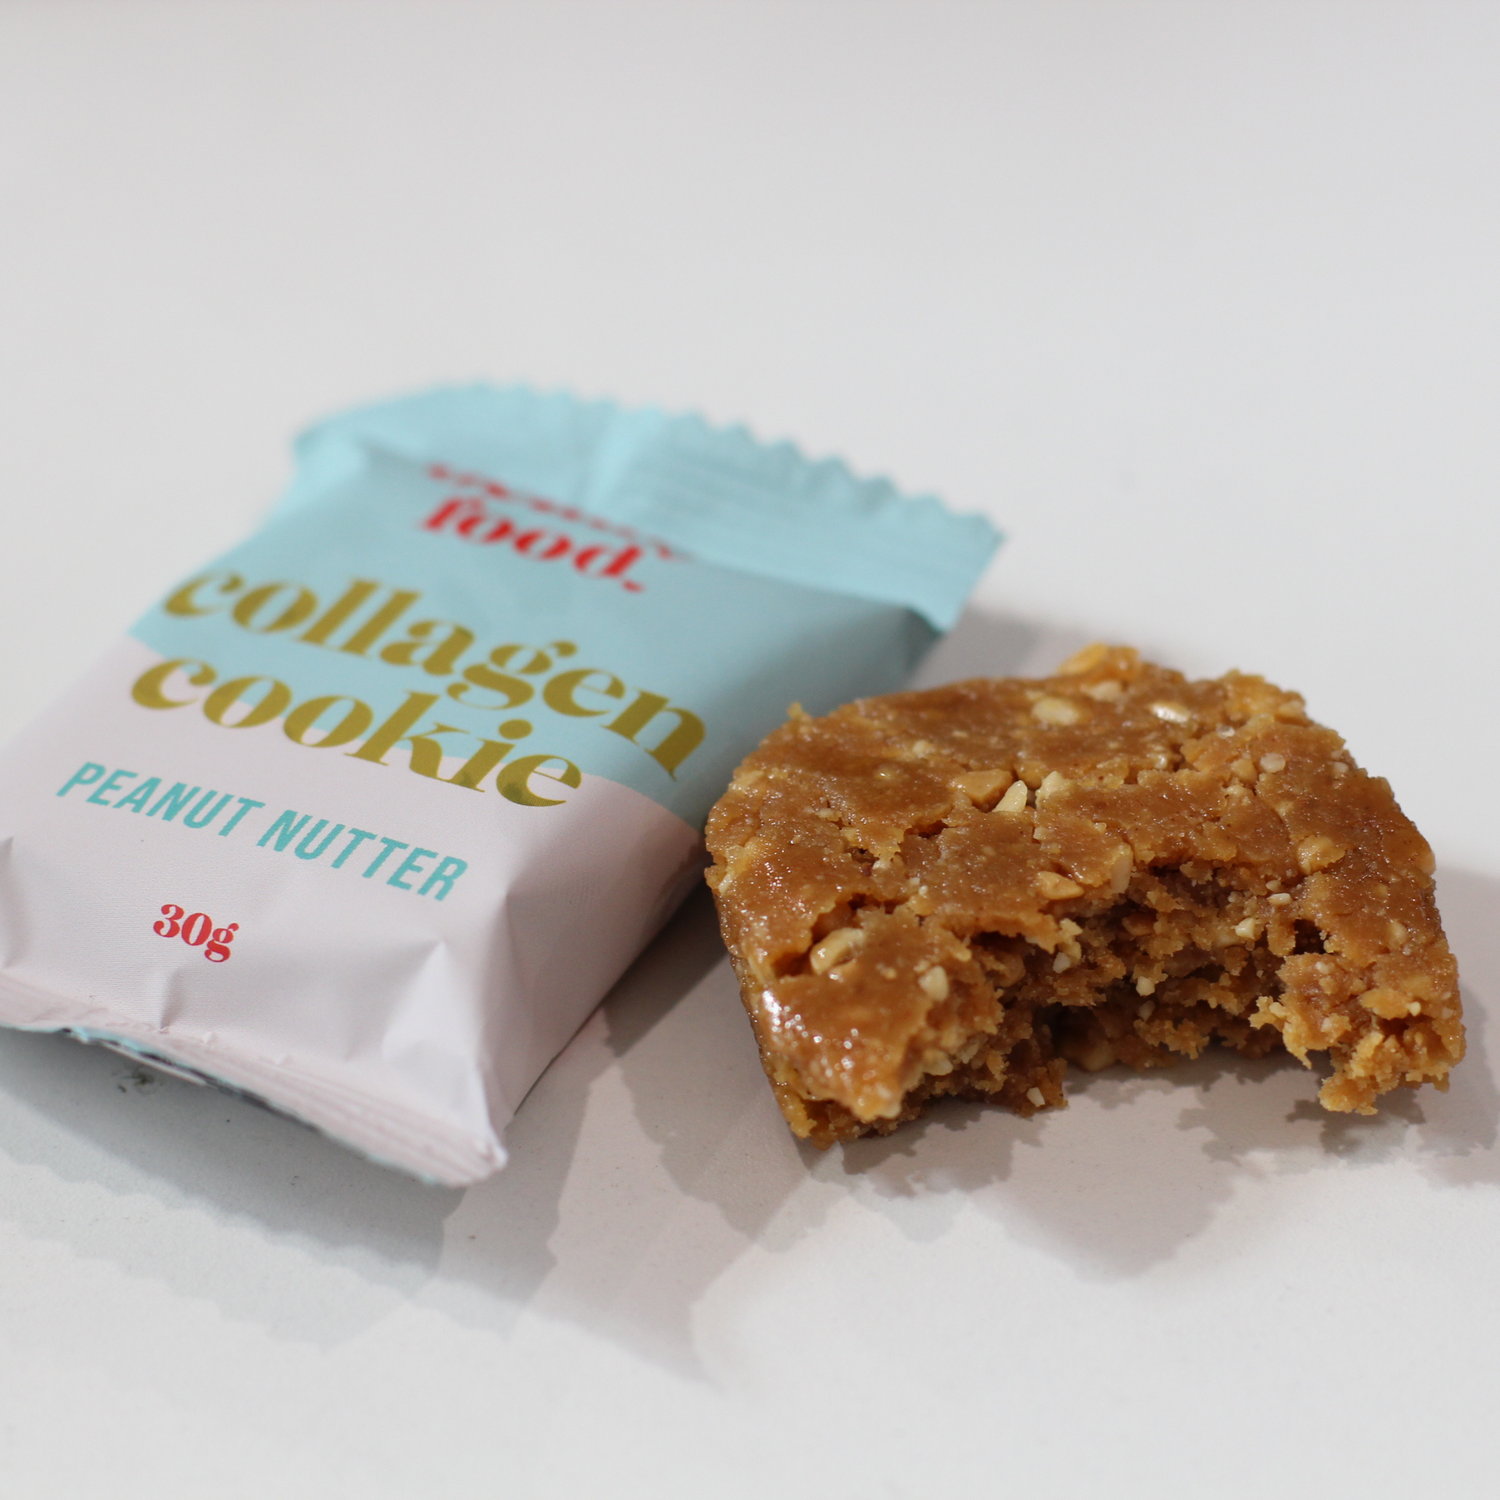 Peanut Nutter Cookies (14 pack)